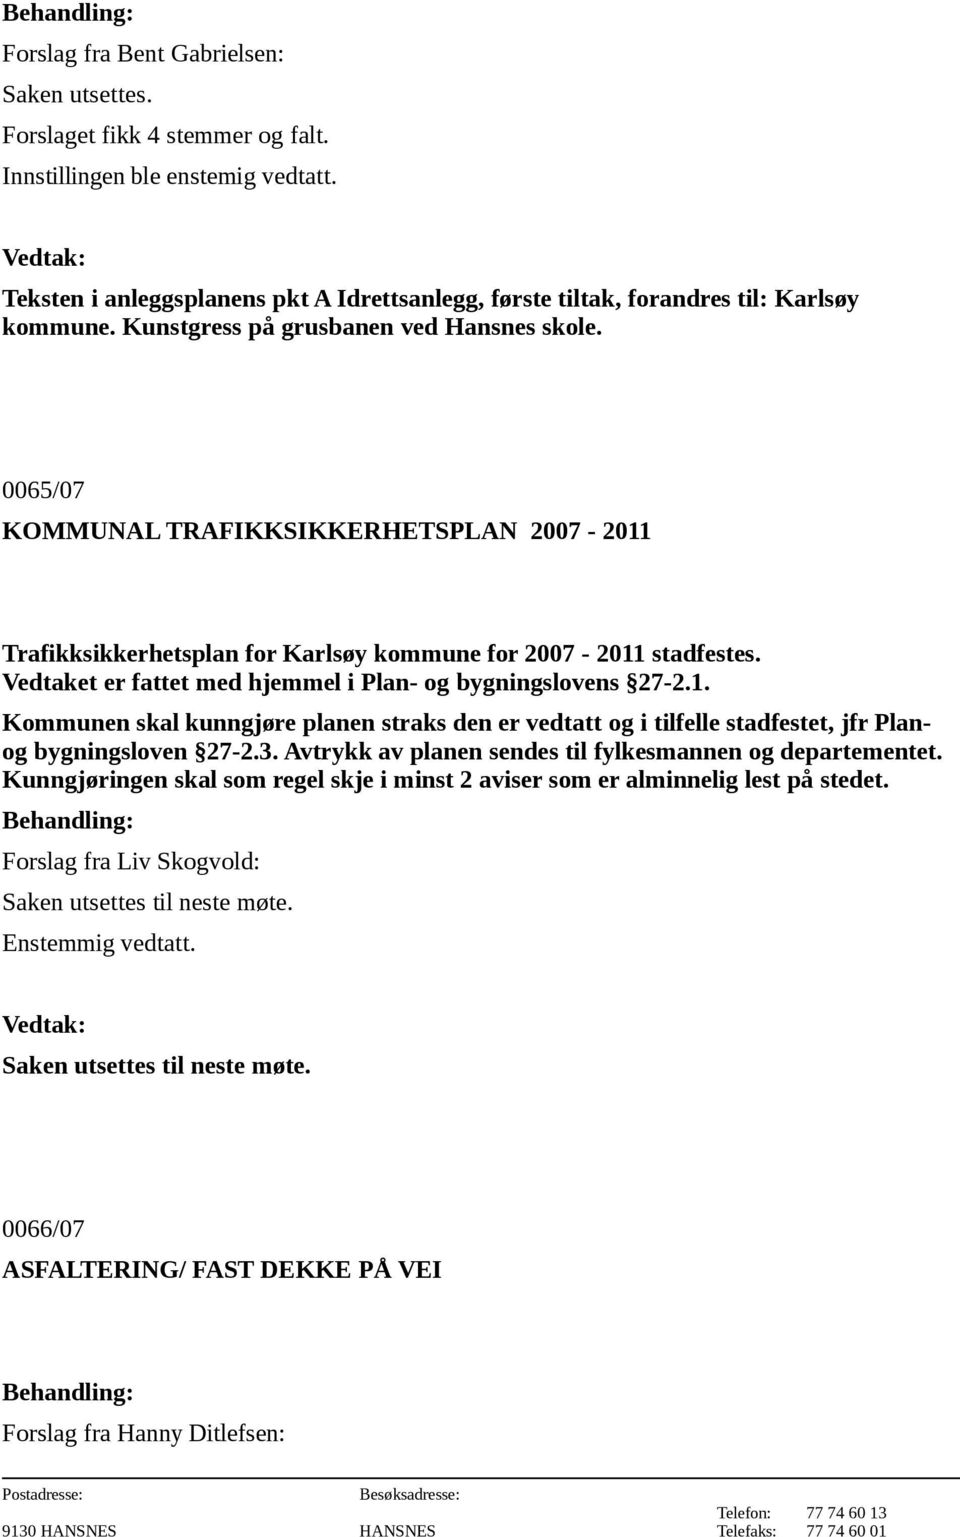 0065/07 KOMMUNAL TRAFIKKSIKKERHETSPLAN 2007-2011 Trafikksikkerhetsplan for Karlsøy kommune for 2007-2011 stadfestes. Vedtaket er fattet med hjemmel i Plan- og bygningslovens 27-2.1. Kommunen skal kunngjøre planen straks den er vedtatt og i tilfelle stadfestet, jfr Planog bygningsloven 27-2.